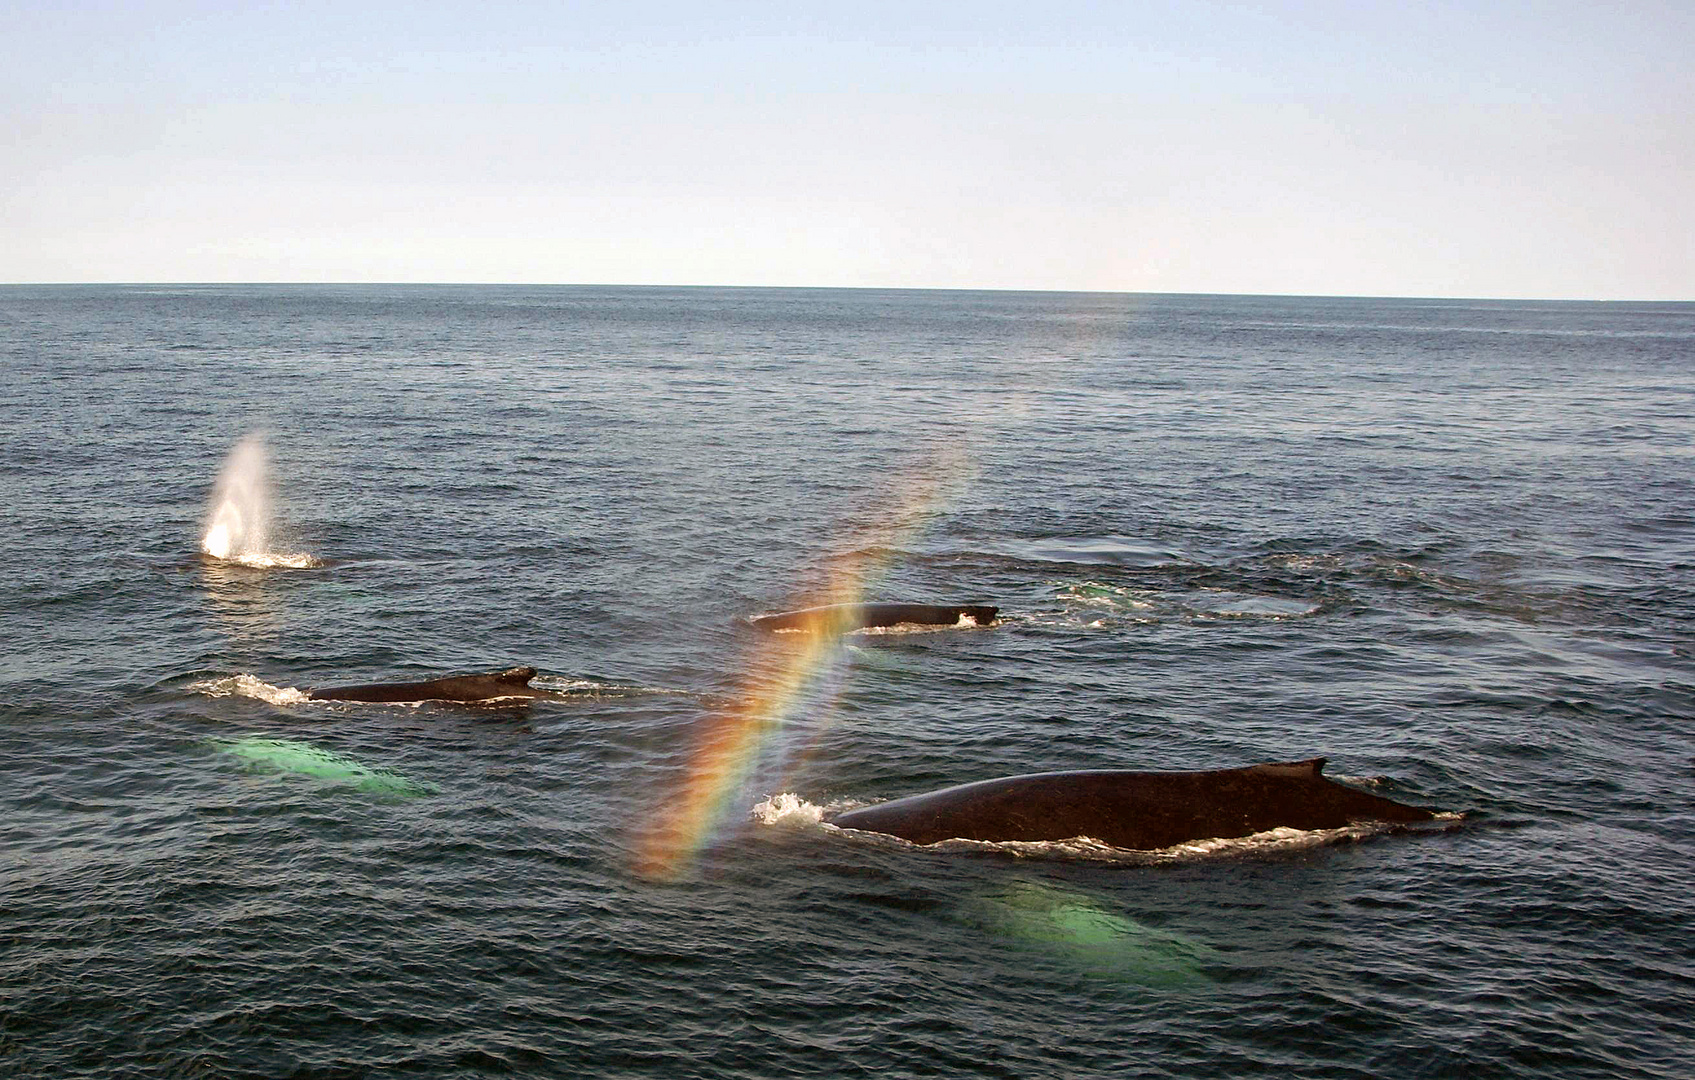 Rainbow Whales